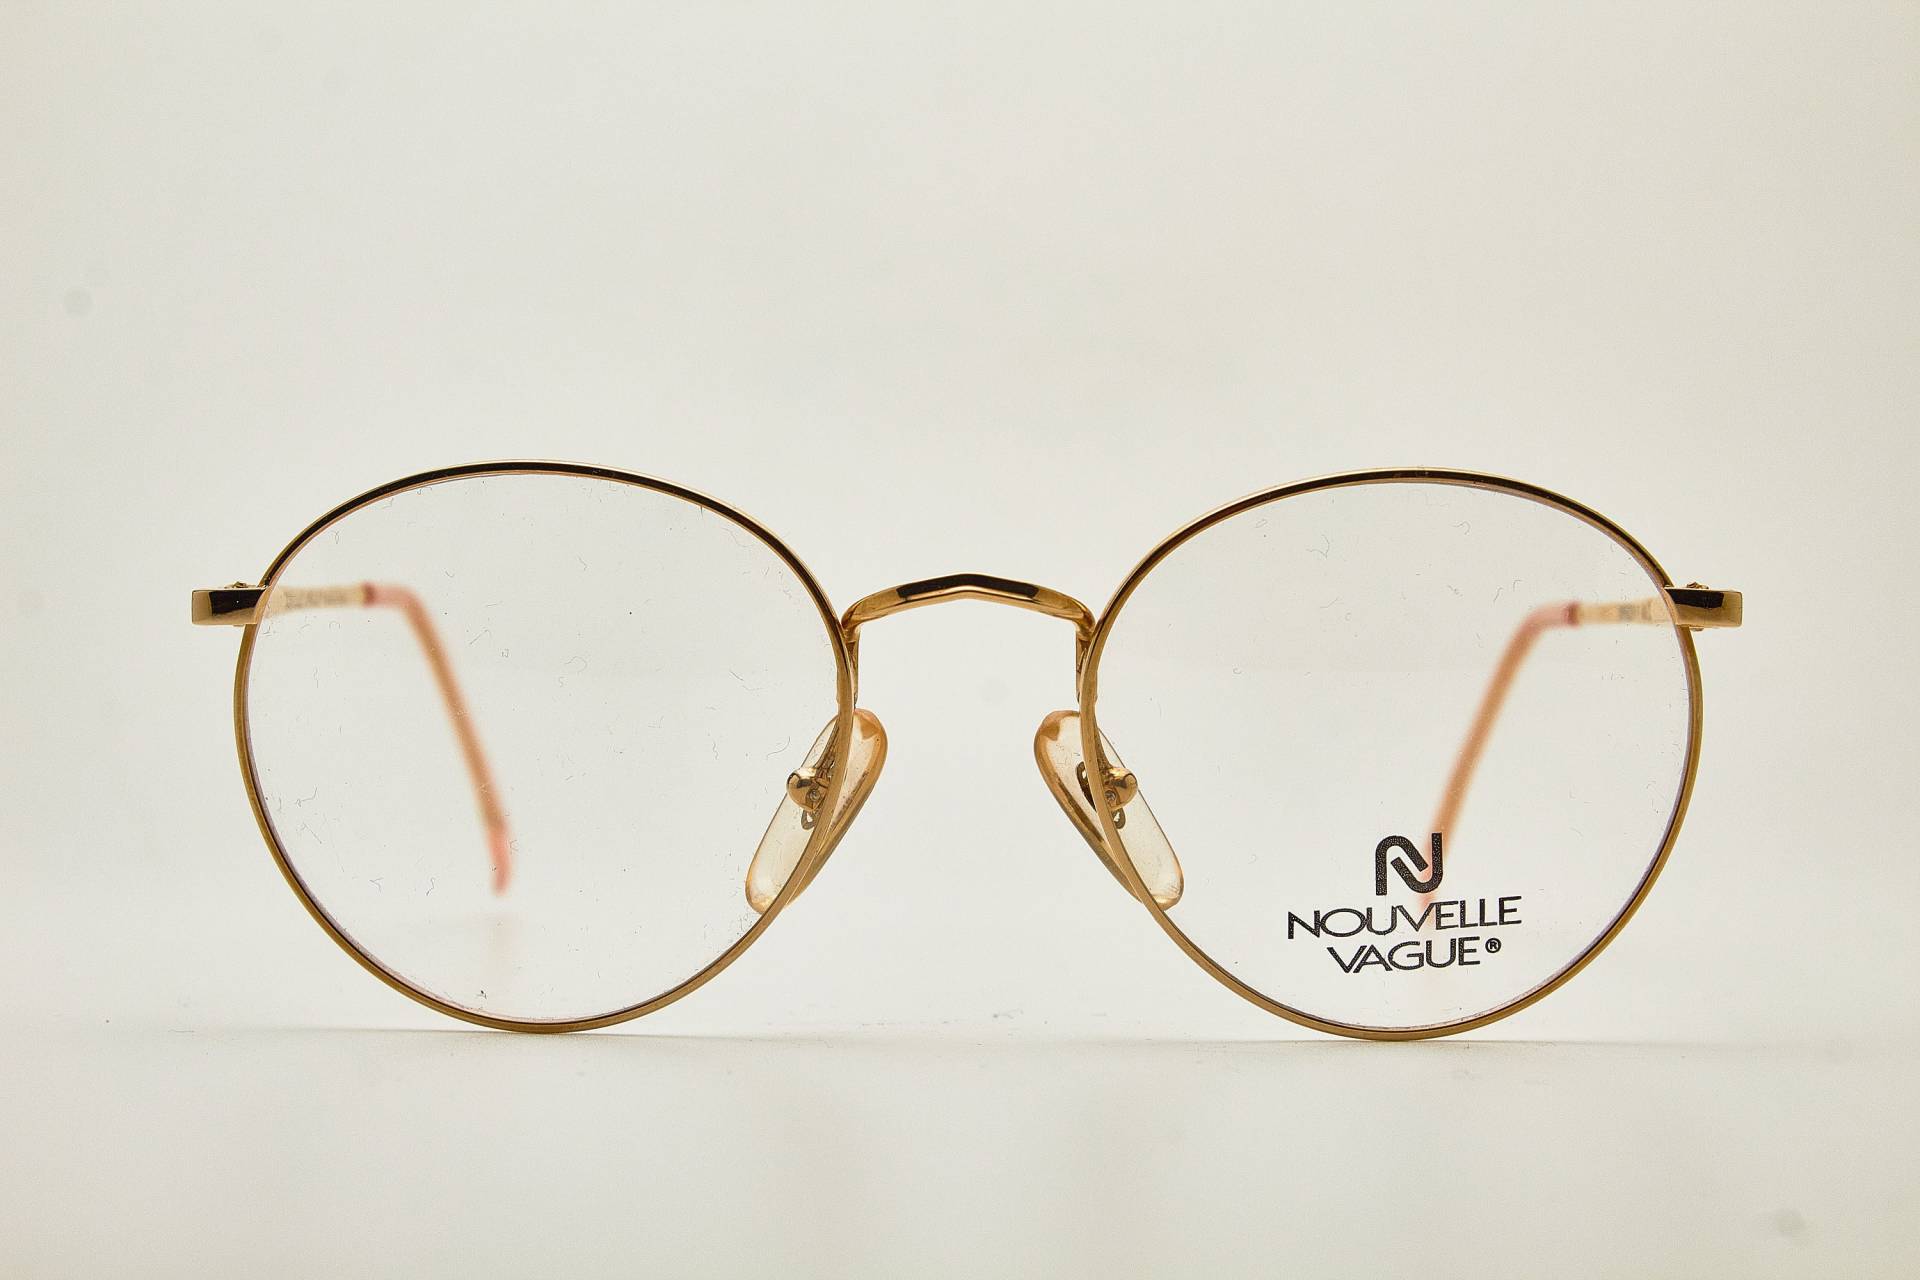 Runde Brille 1980Er Jahre Nouvelle Vague Spencer 49 Gold Rahmen/Hipster Brillen/Runde Brillen/Vintage Brillen/1980Er Sonnenbrillen/Runde Brillen von VintageGlassesVault